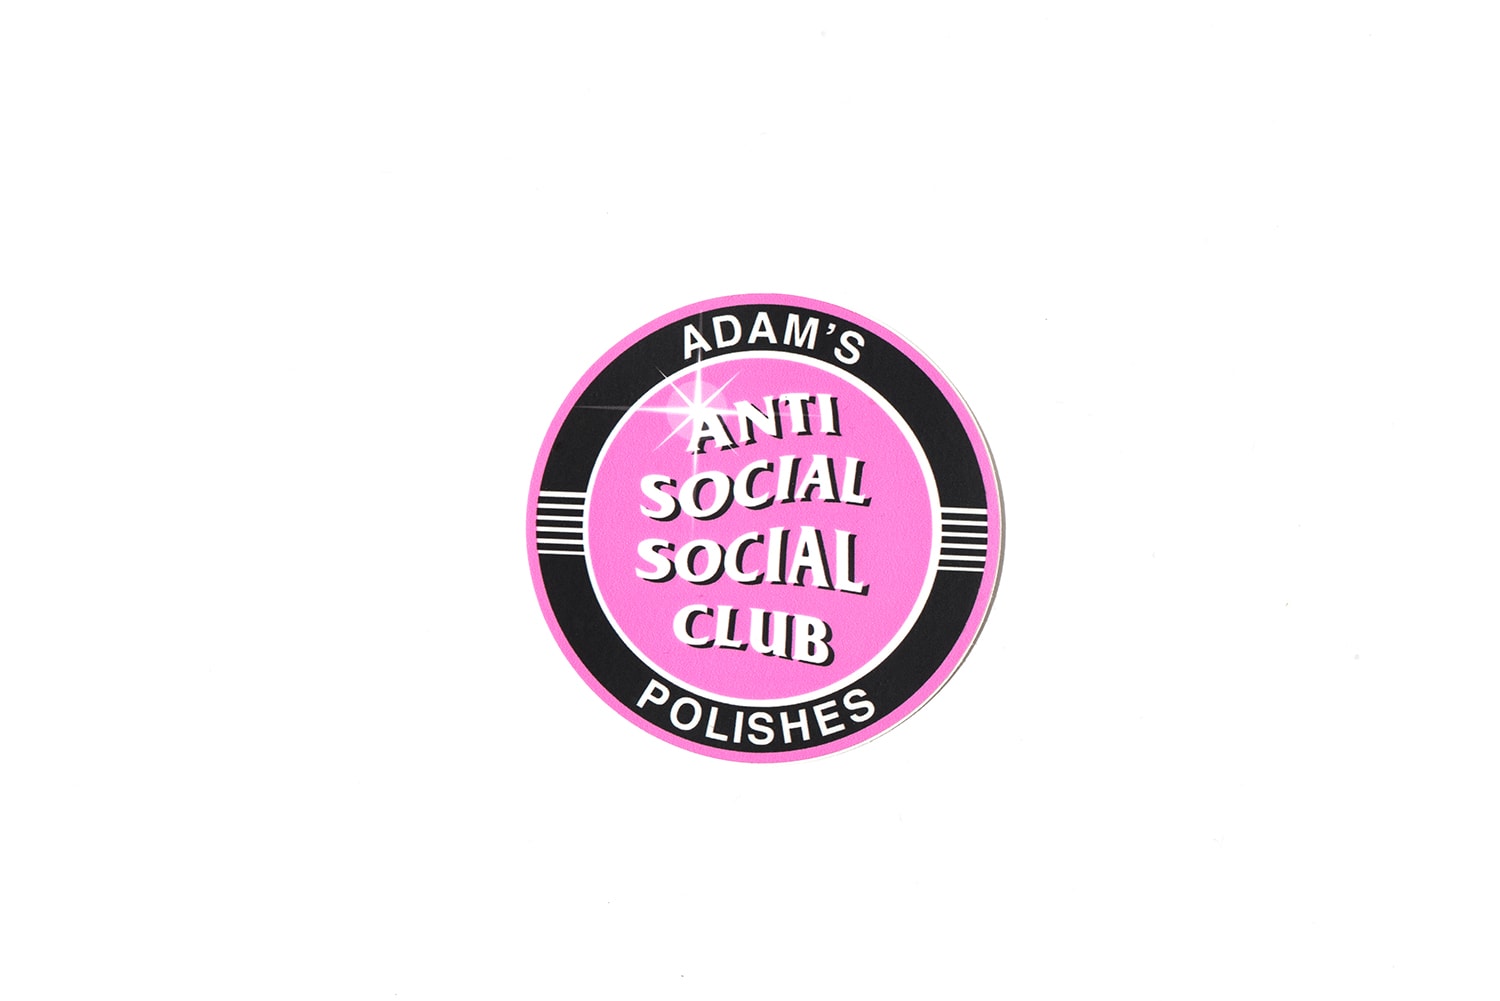 안티 소셜 소셜 클럽 아담스 폴리시 협업 자동차 클리너 Anti Social Social Club Adam's Polishes Car Cleaning Kit 2017